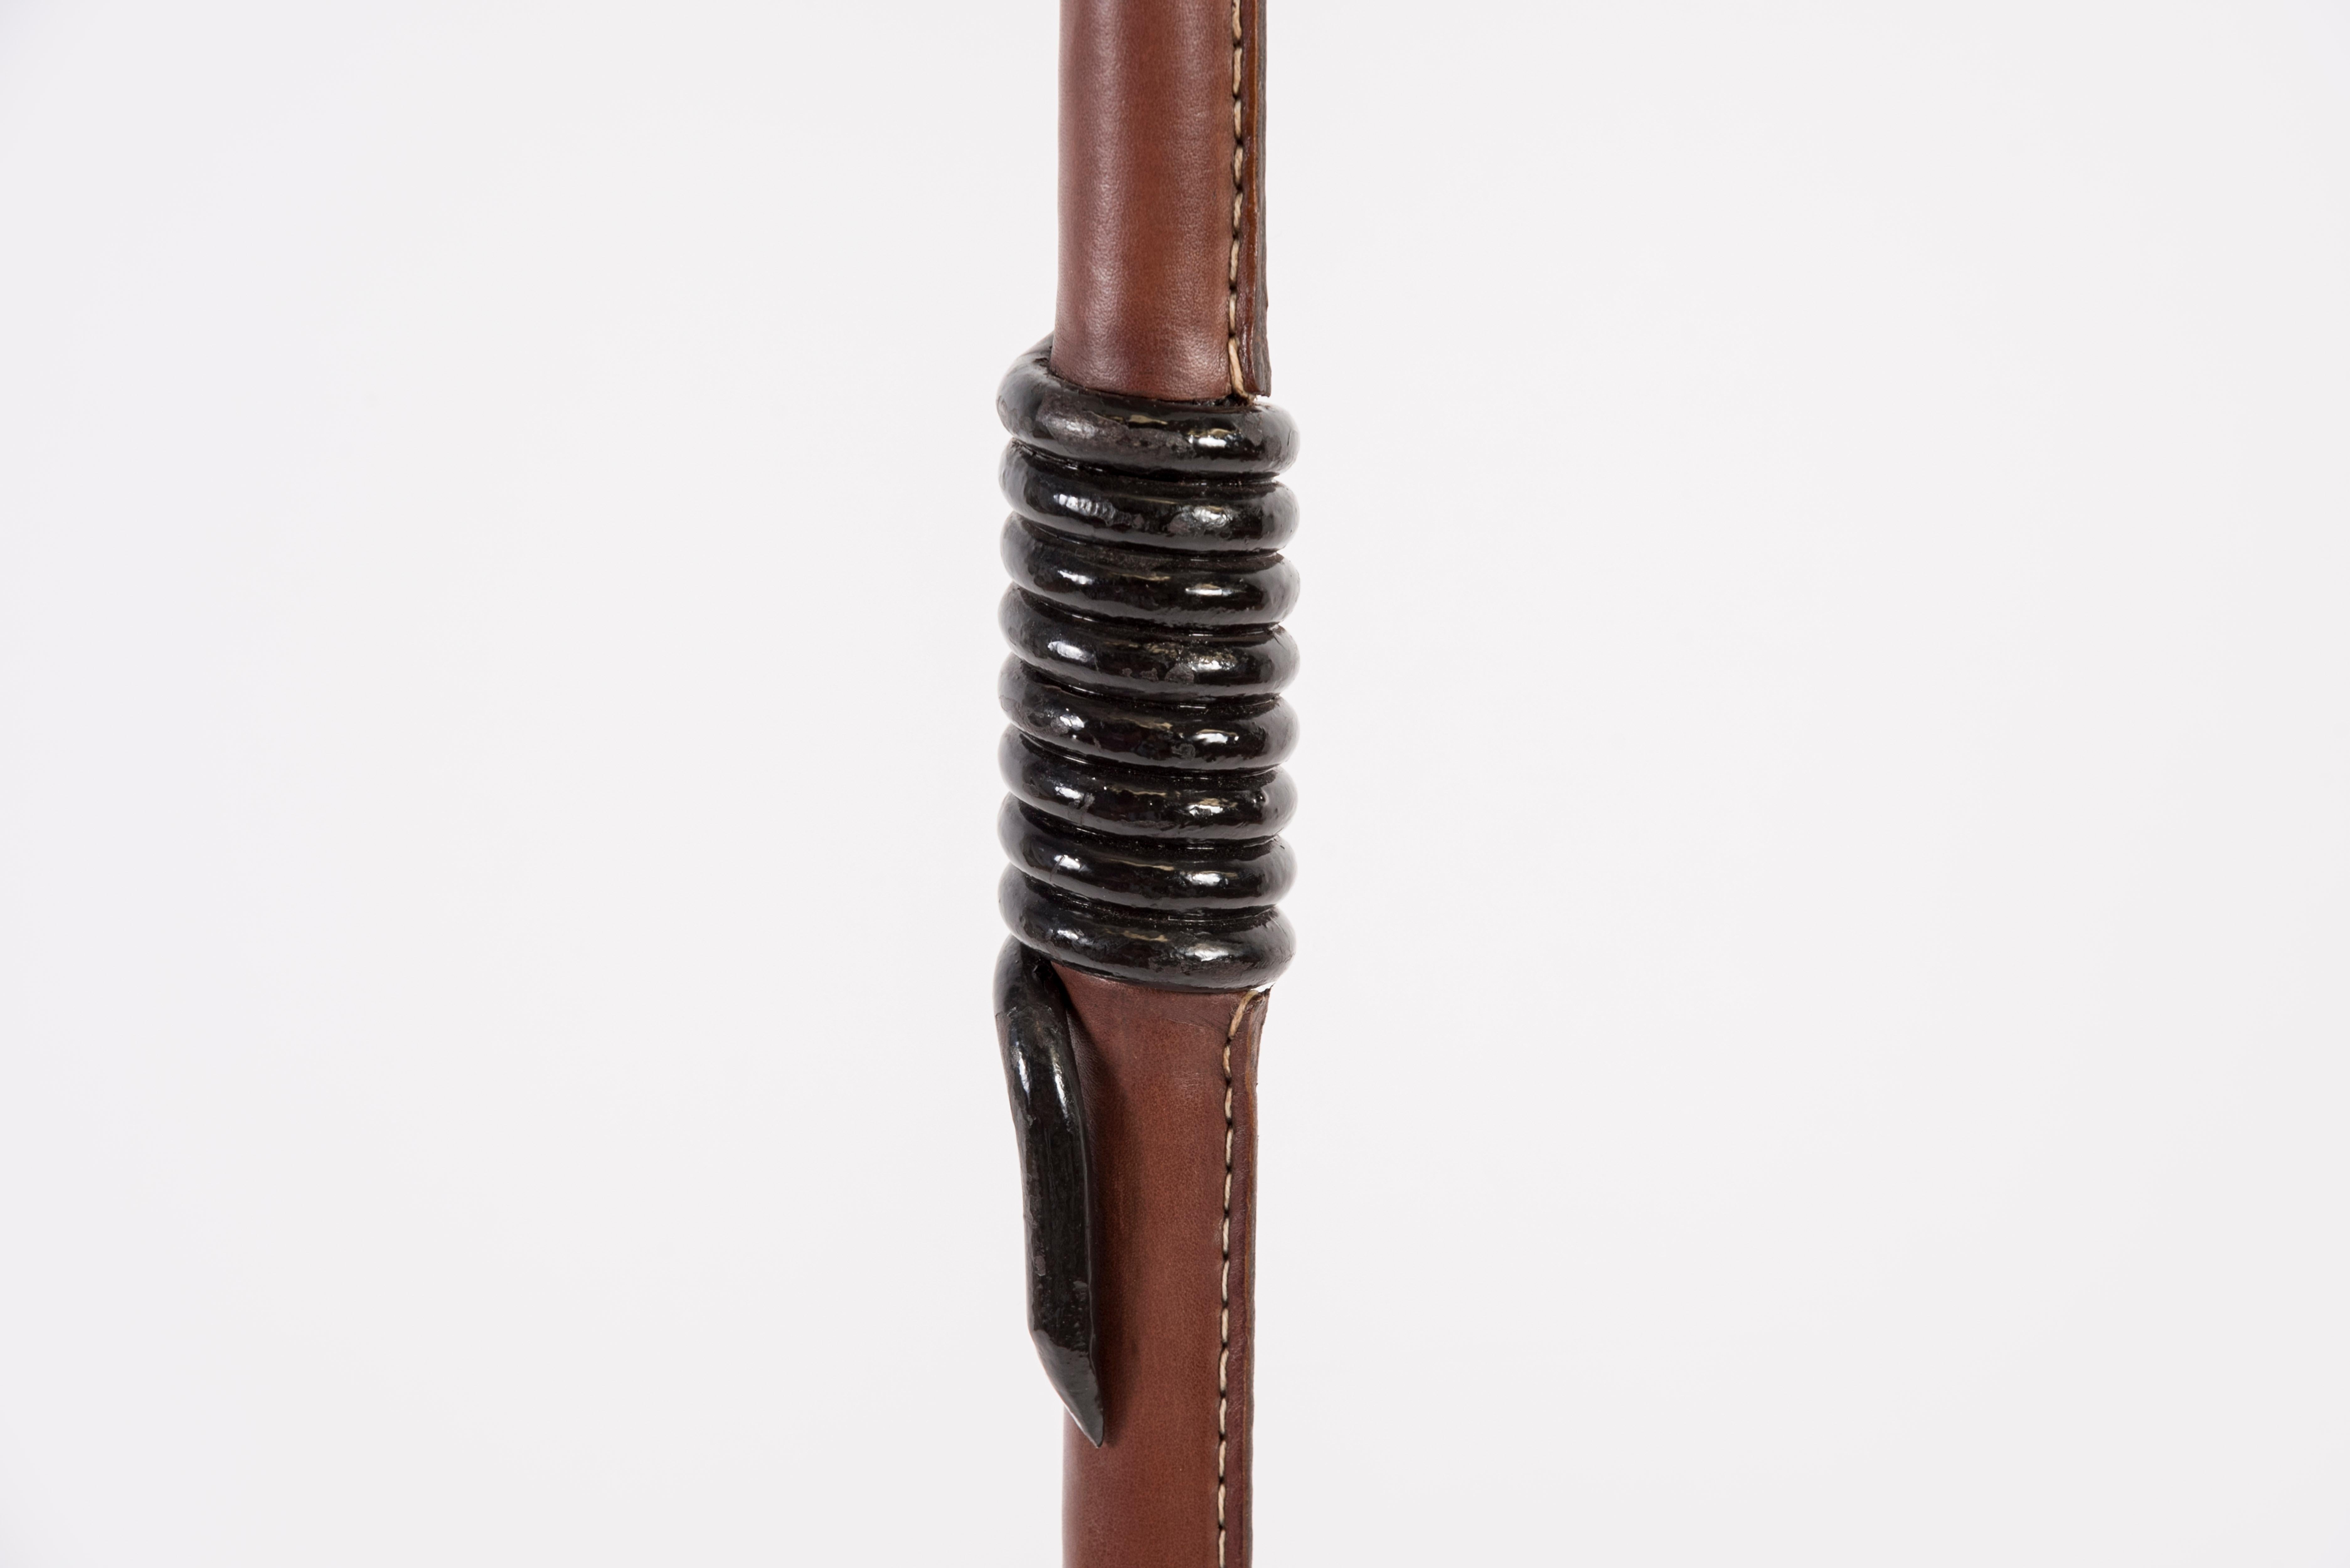 stehlampe aus genähtem Leder aus den 1950er Jahren von Jacques Adnet
Braunes Leder
Frankreich
Maße ohne Schirm angegeben
Kein Schatten vorgesehen.